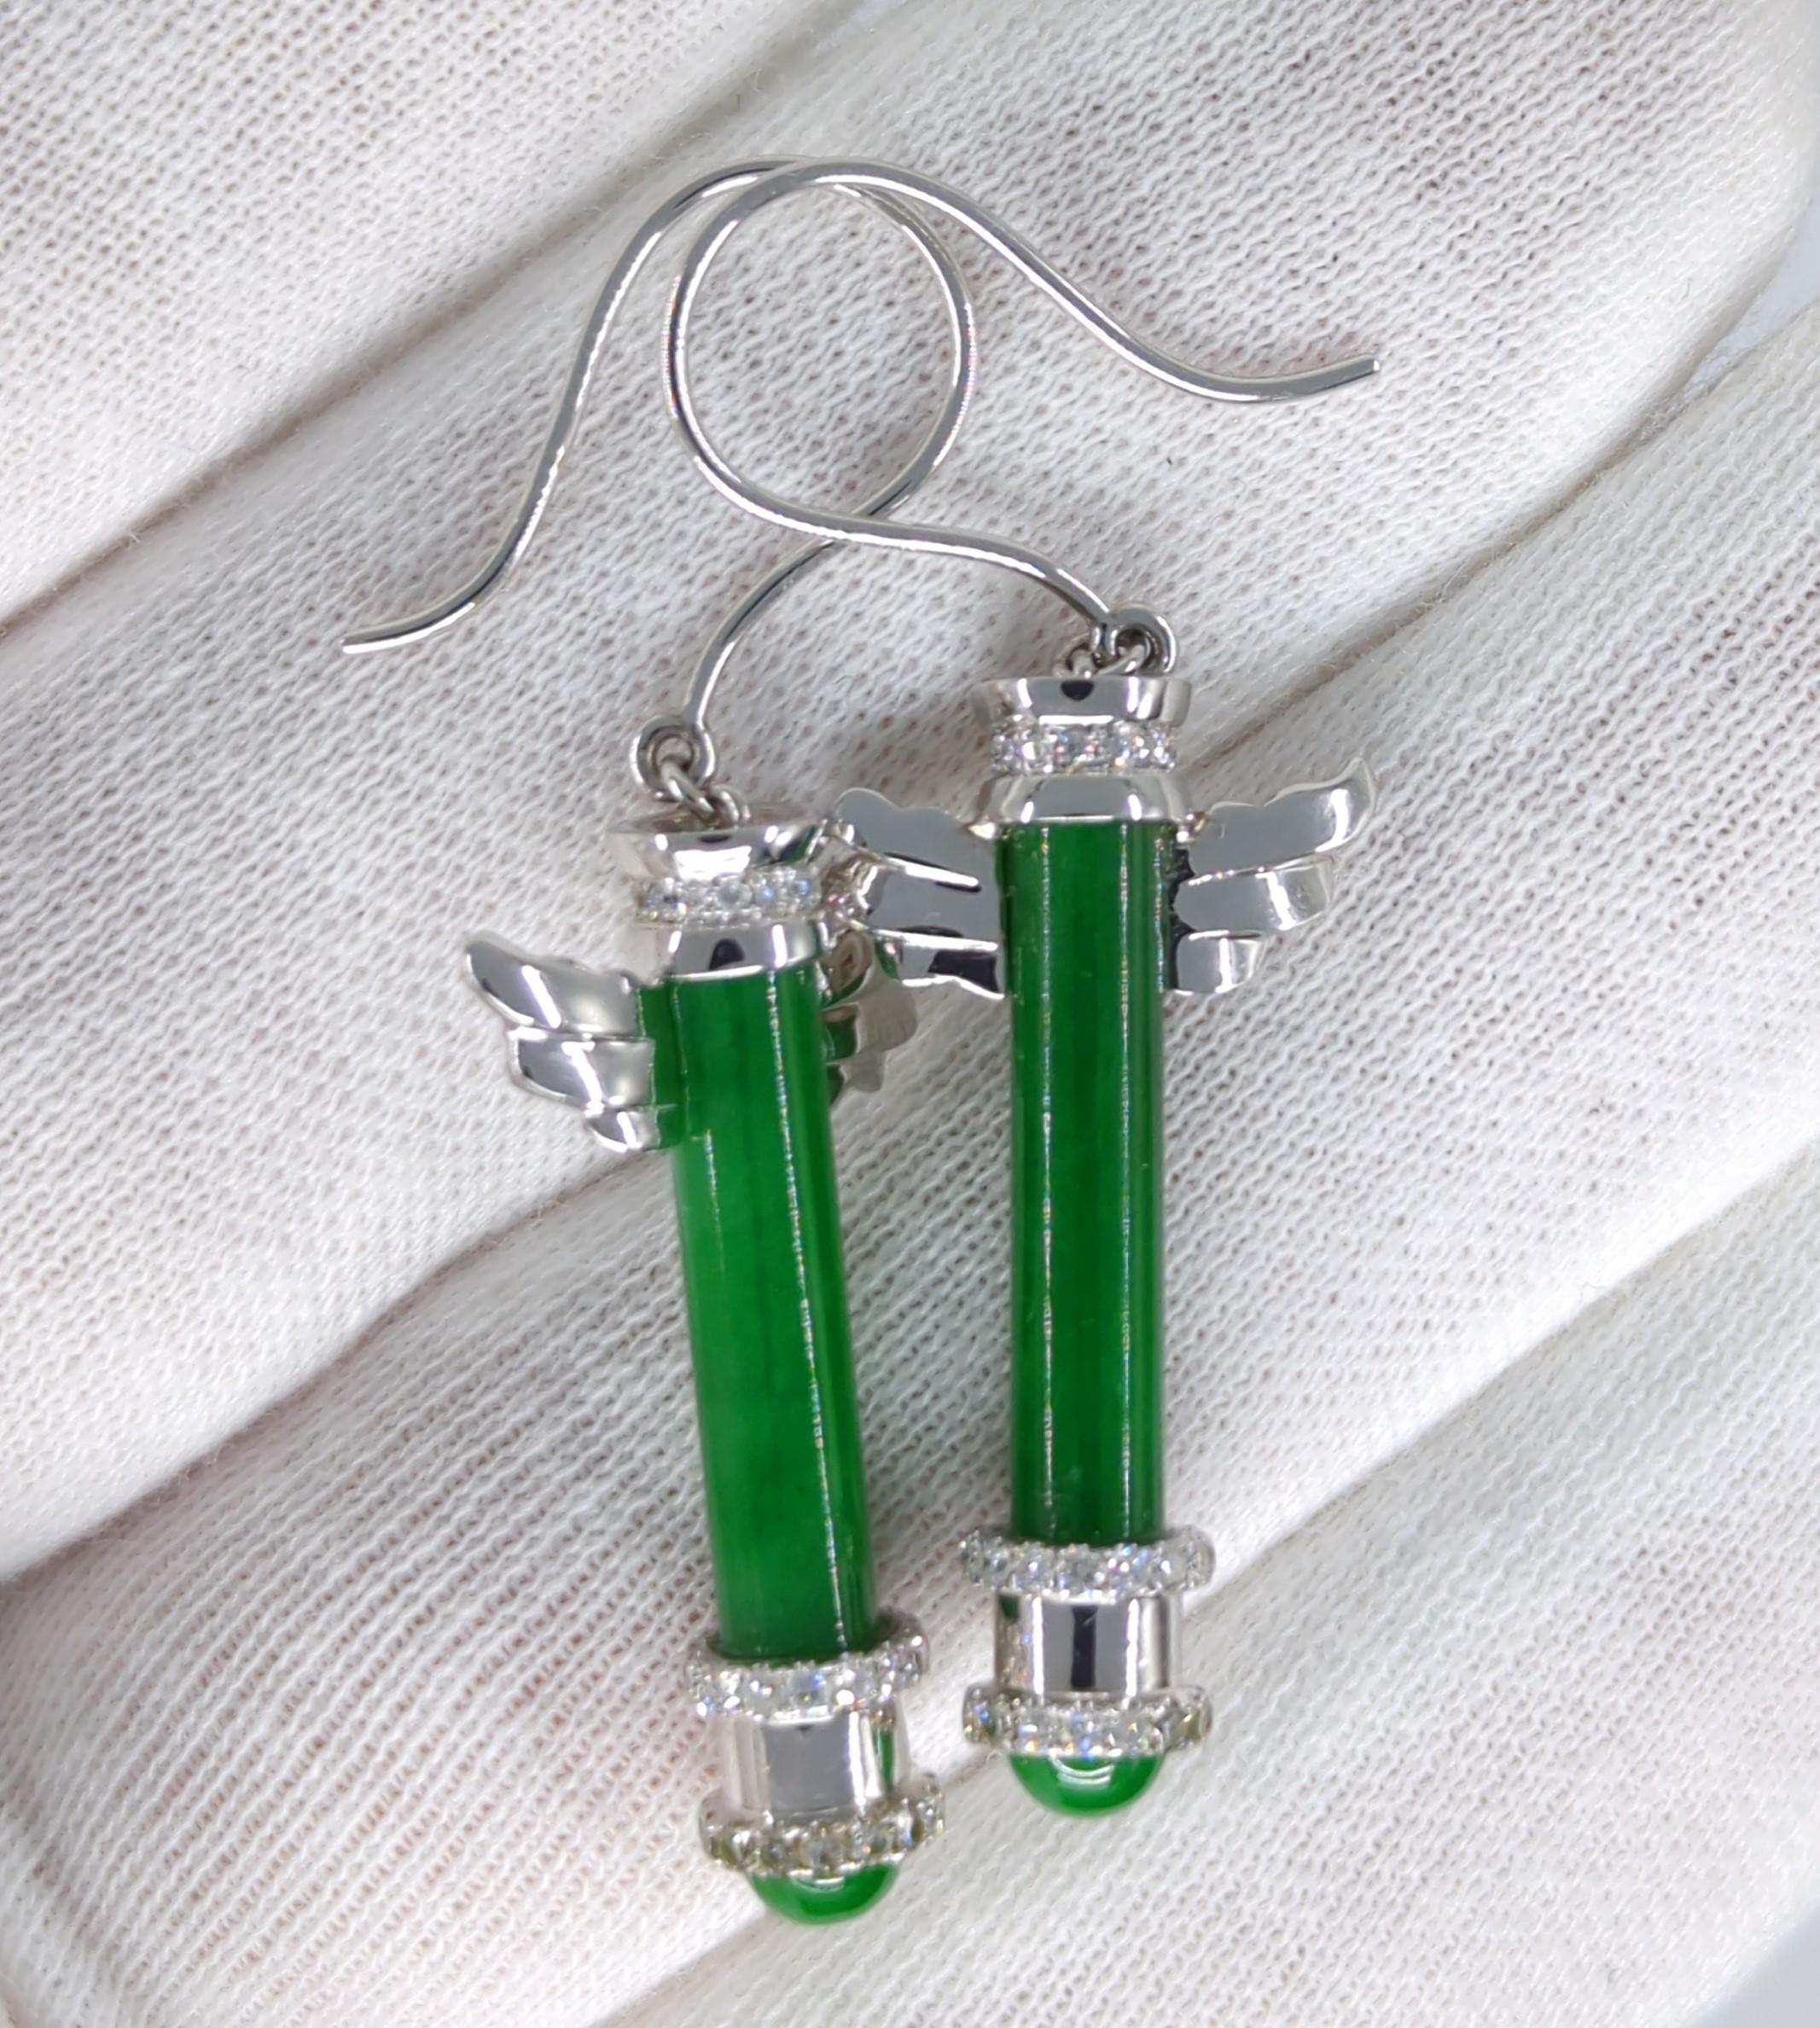 Women's 18K WG Emerald Green Jadeite Diamond Earrings A-Grade GIA Gemologist Appraisal For Sale